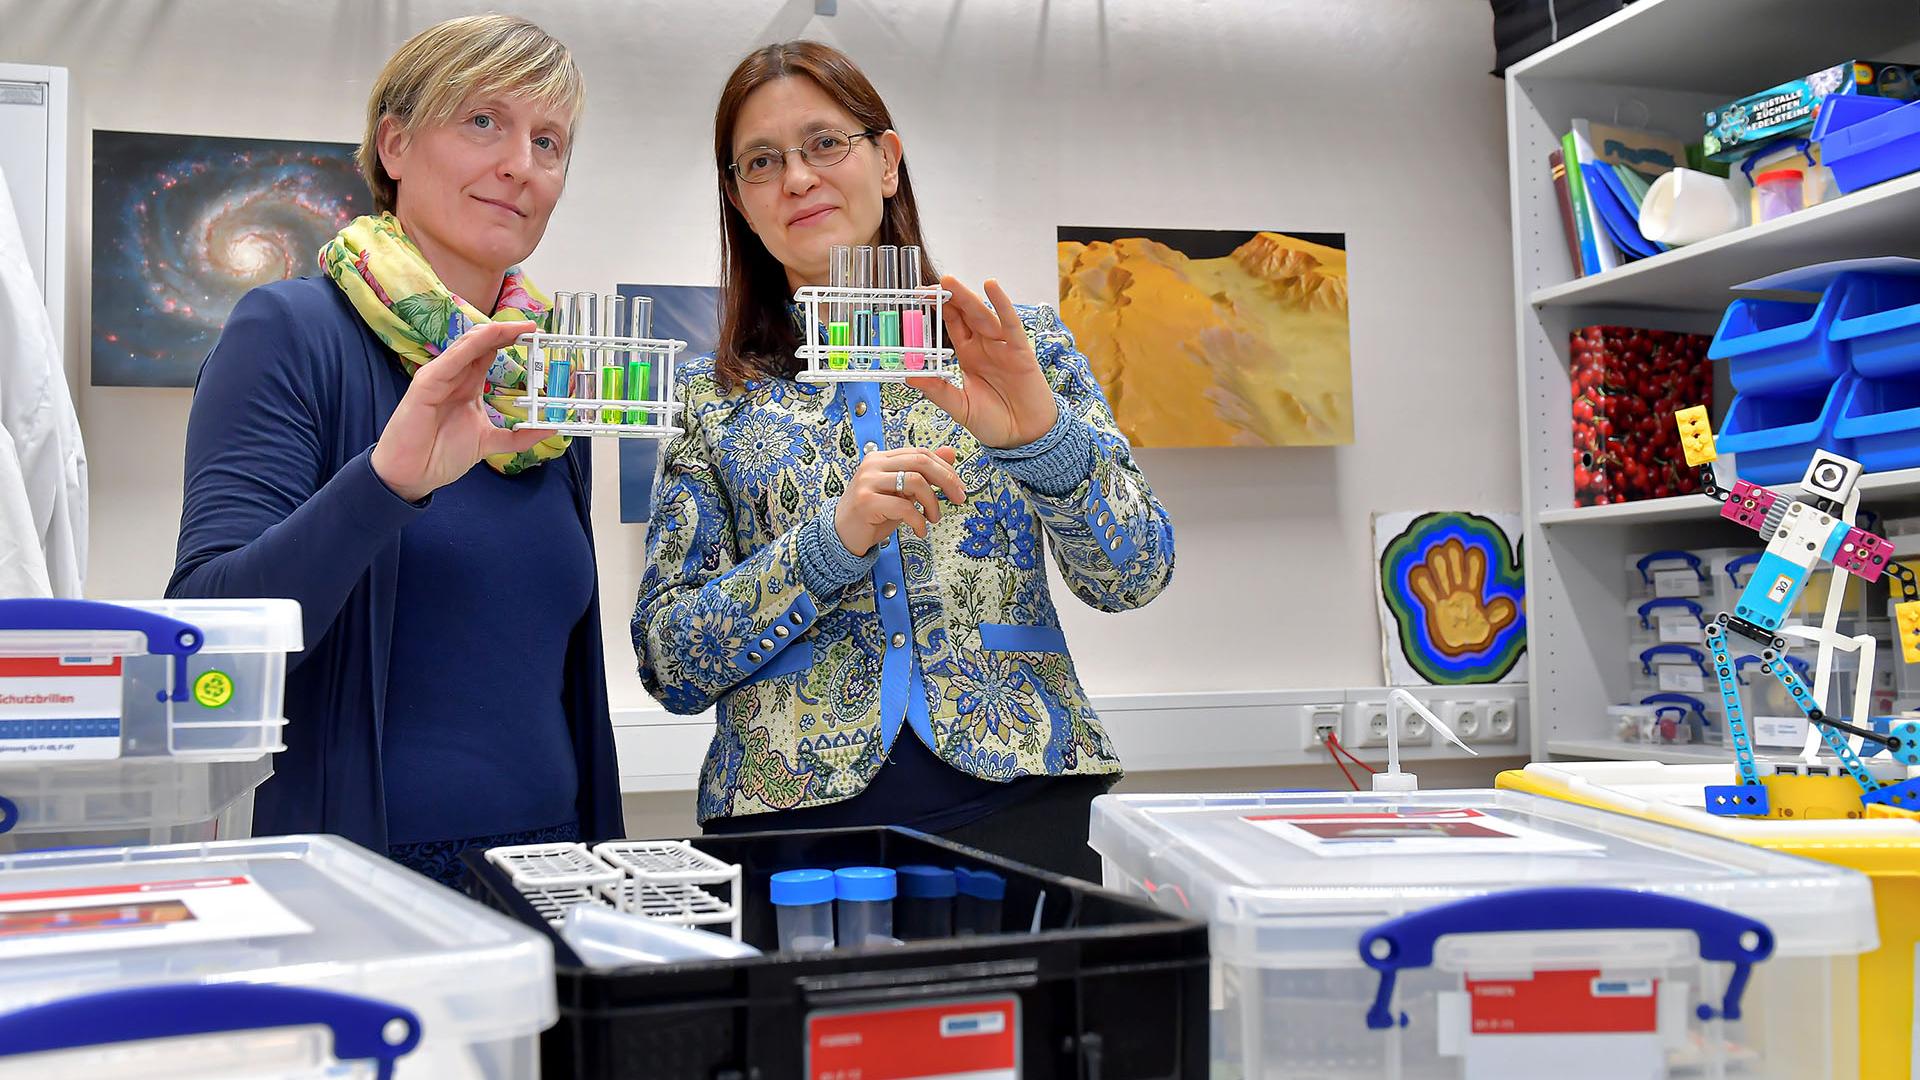 Katja Himmelreich und Dr. Christina Walther testen eine Forscherbox zum Thema Fluoreszenz, die Katja Himmelreich im Rahmen der ZEISS Initiative „A Heart for Science" für einen Workshop mit Schülerinnen und Schülern ausleiht.